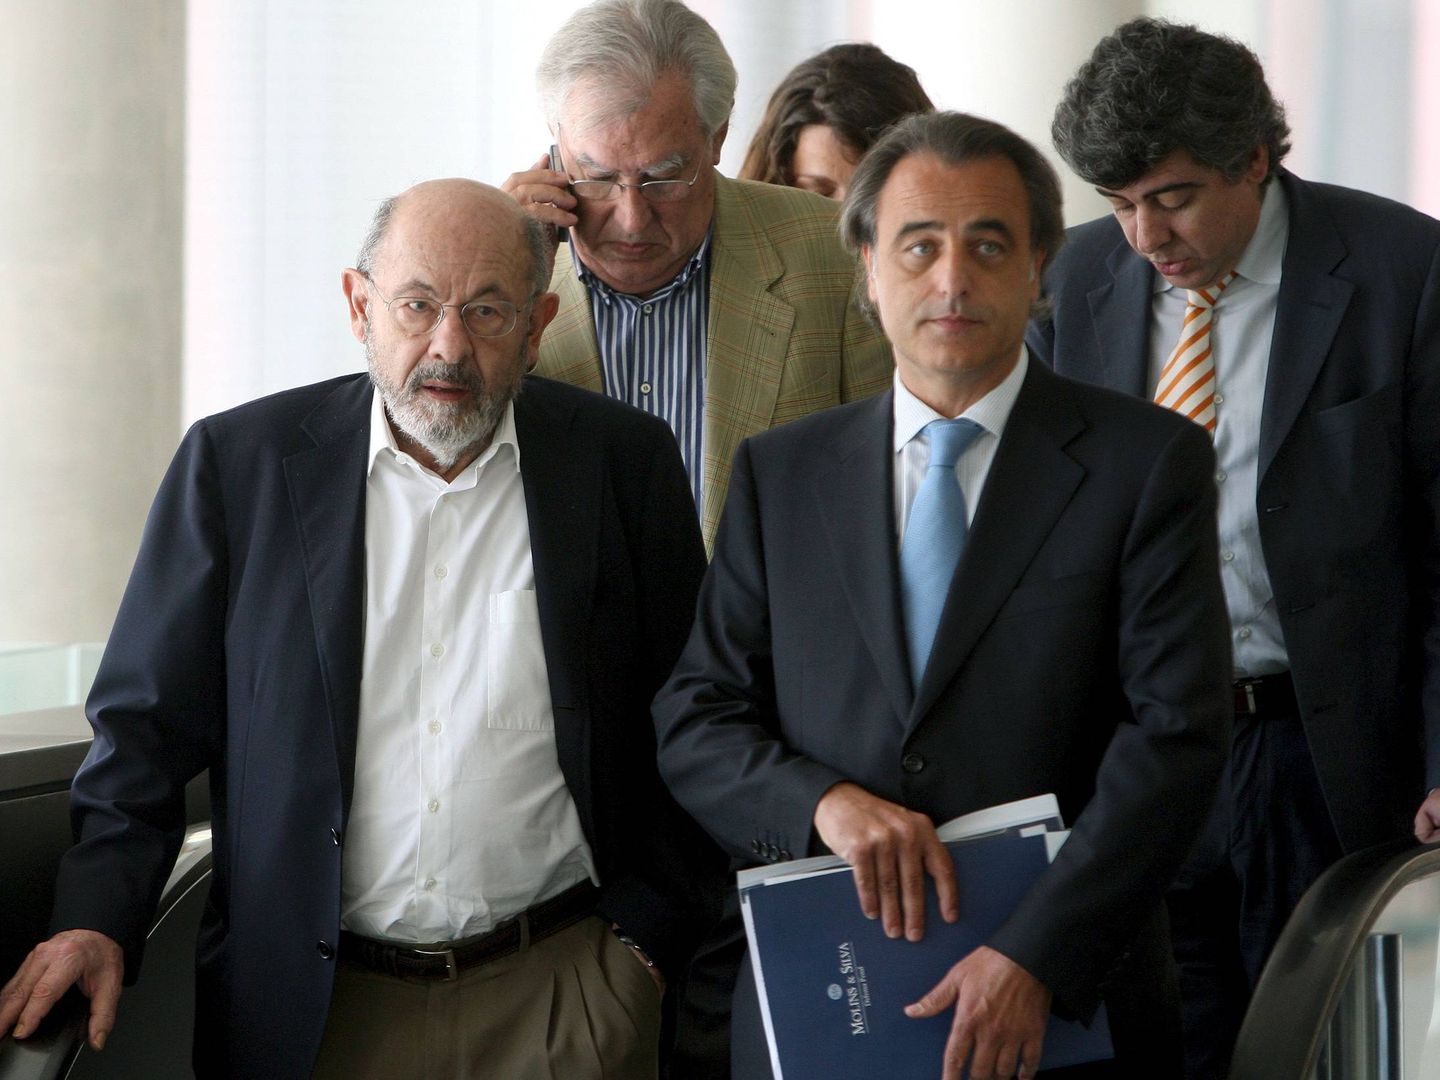 Fèlix Millet, Jordi Montull y los abogados de ambos | Foto: EFE